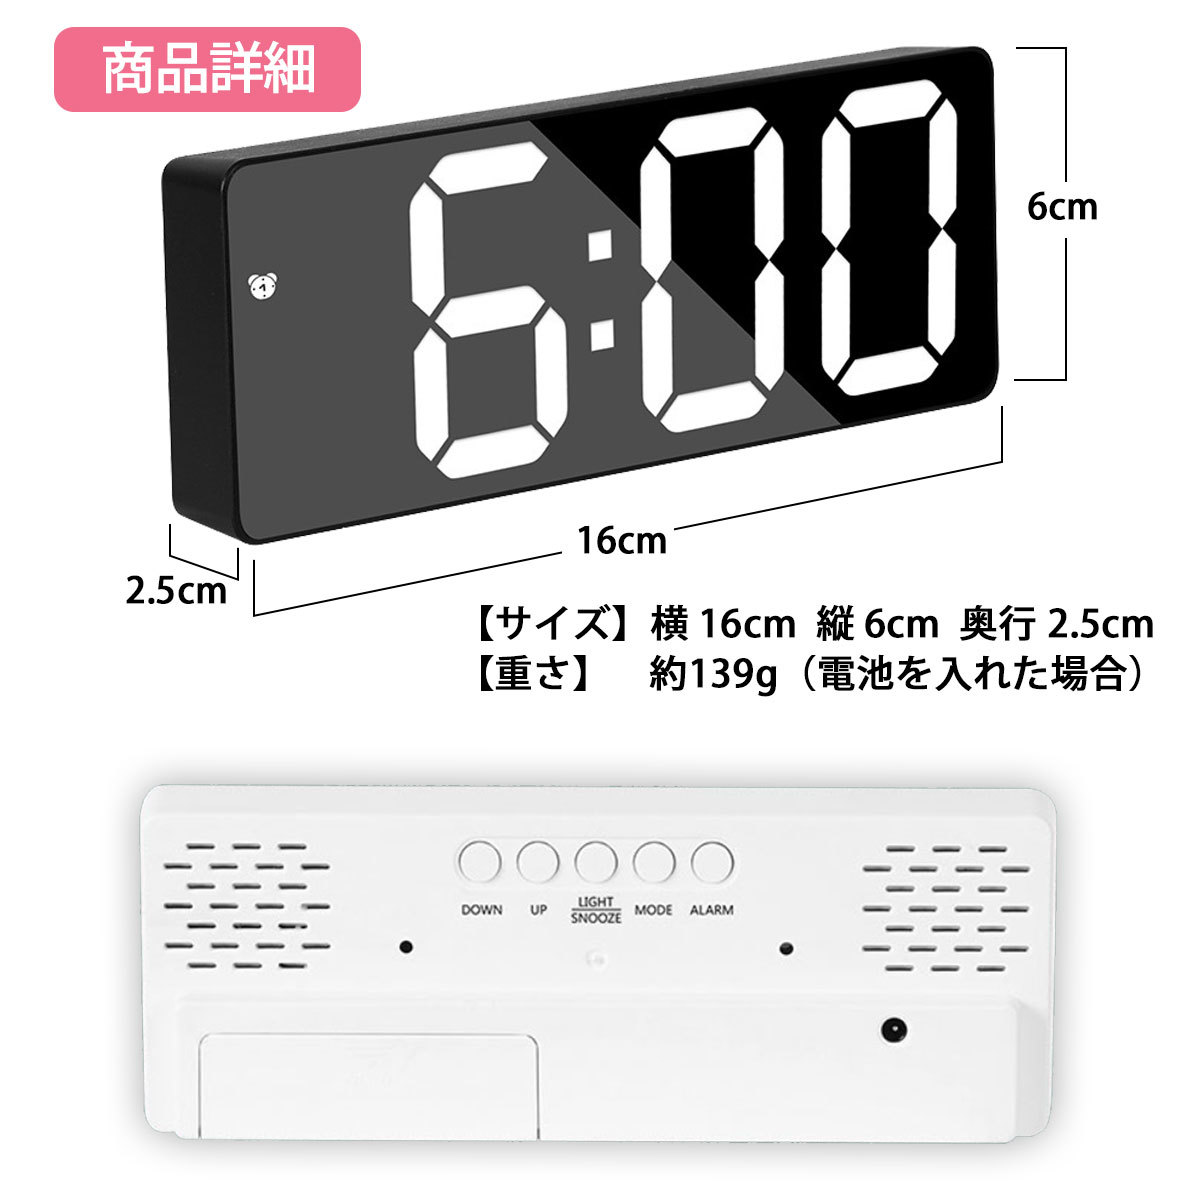 【目覚まし時計 ホワイト(ミラータイプ)】おしゃれ めざまし時計 LED デジタル 置き時計 シンプル アラーム 温度計 多機能 見やすいの画像7